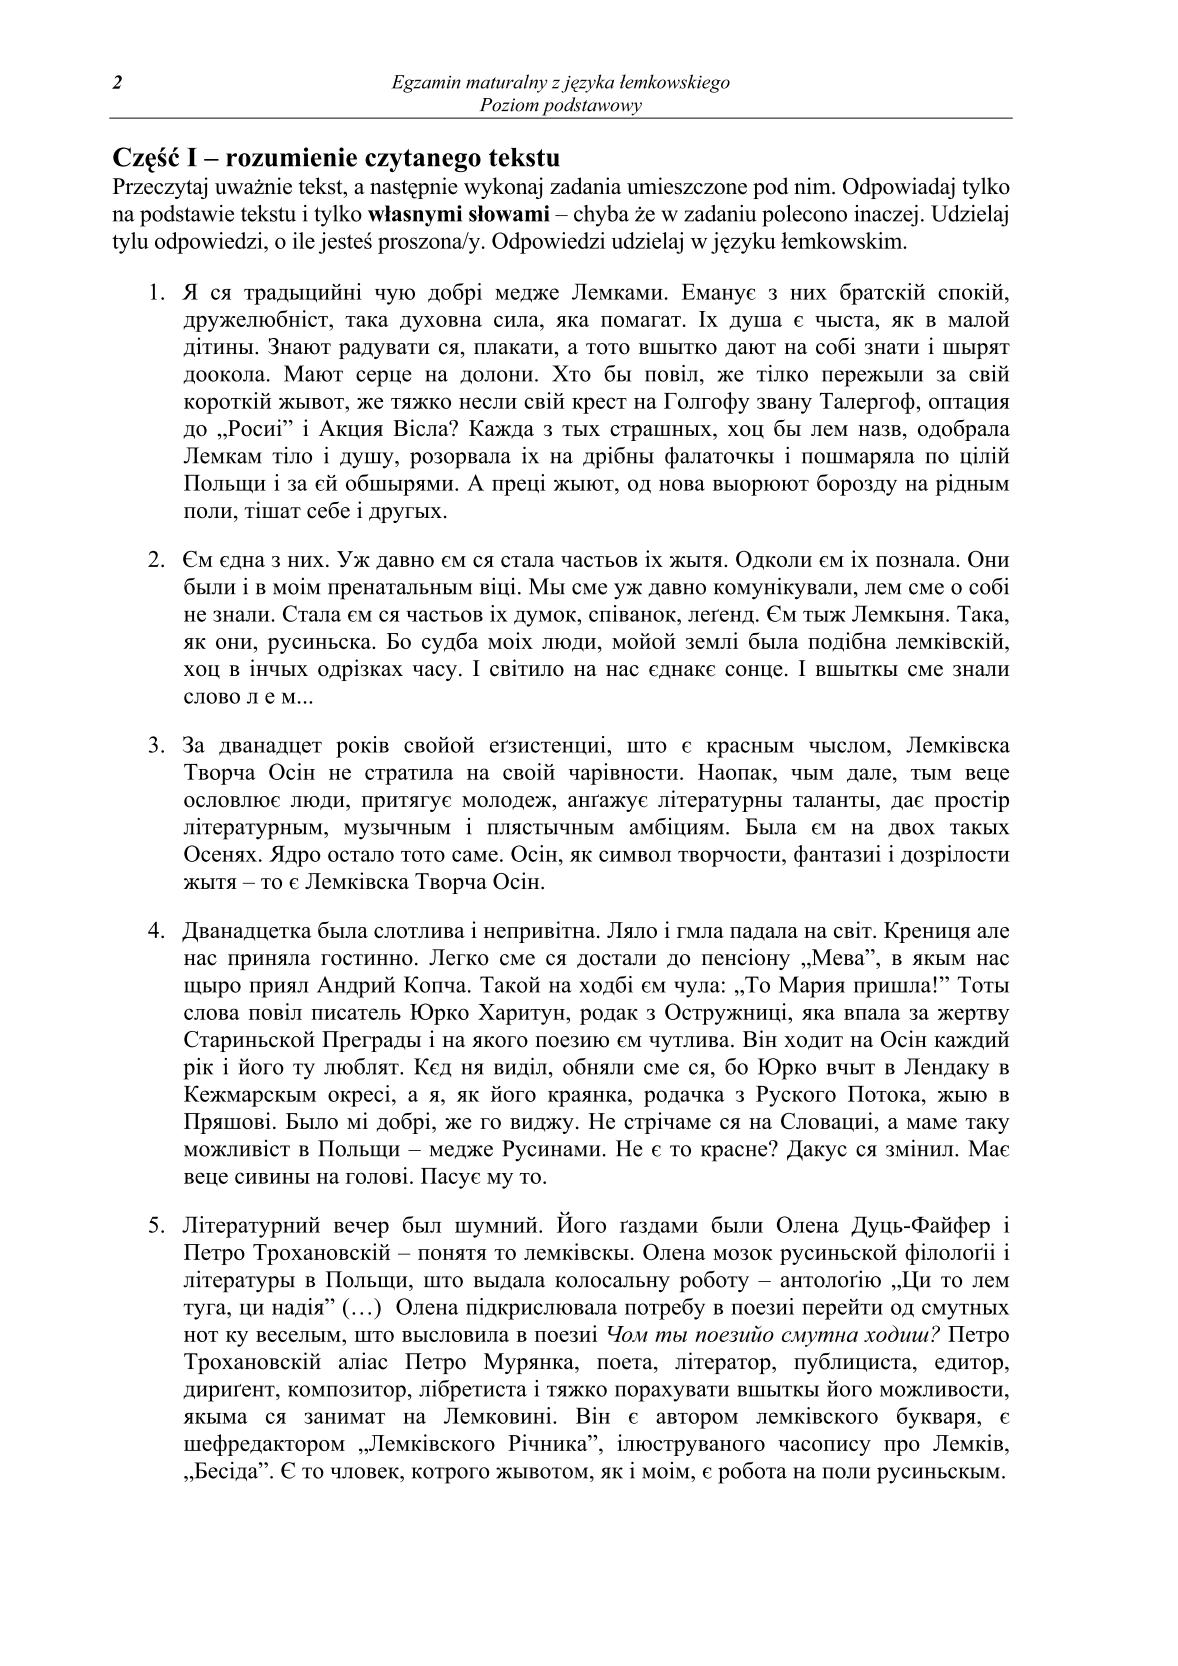 pytania-jezyk-lemkowski-poziom-podstawowy-matura-2014-str.2